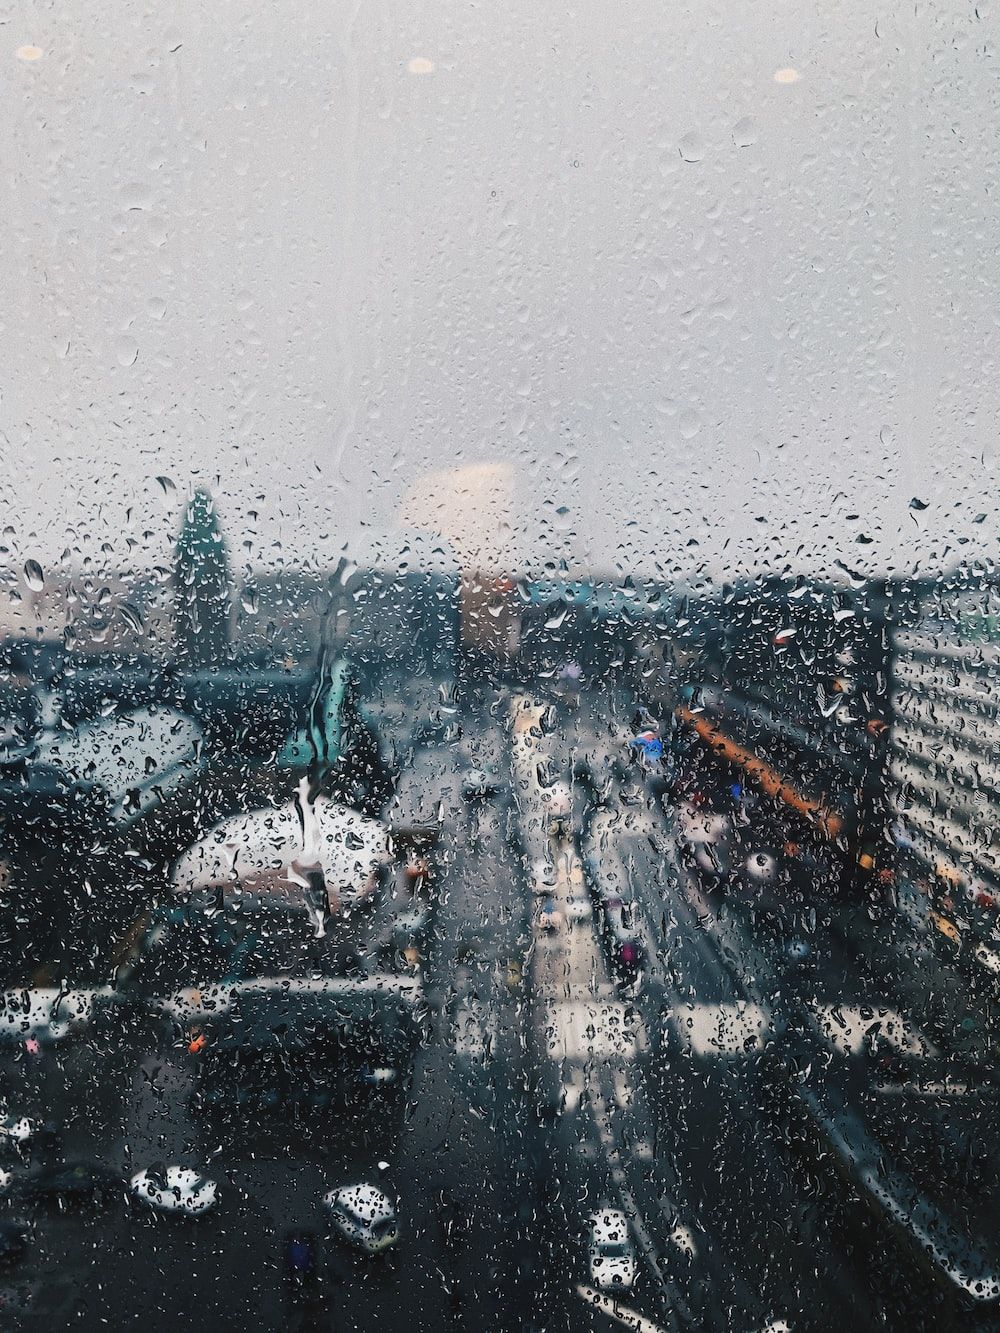  Regen Hintergrundbild 1000x1333. Foto zum Thema Blick auf eine Stadt durch ein regenbedecktes Fenster